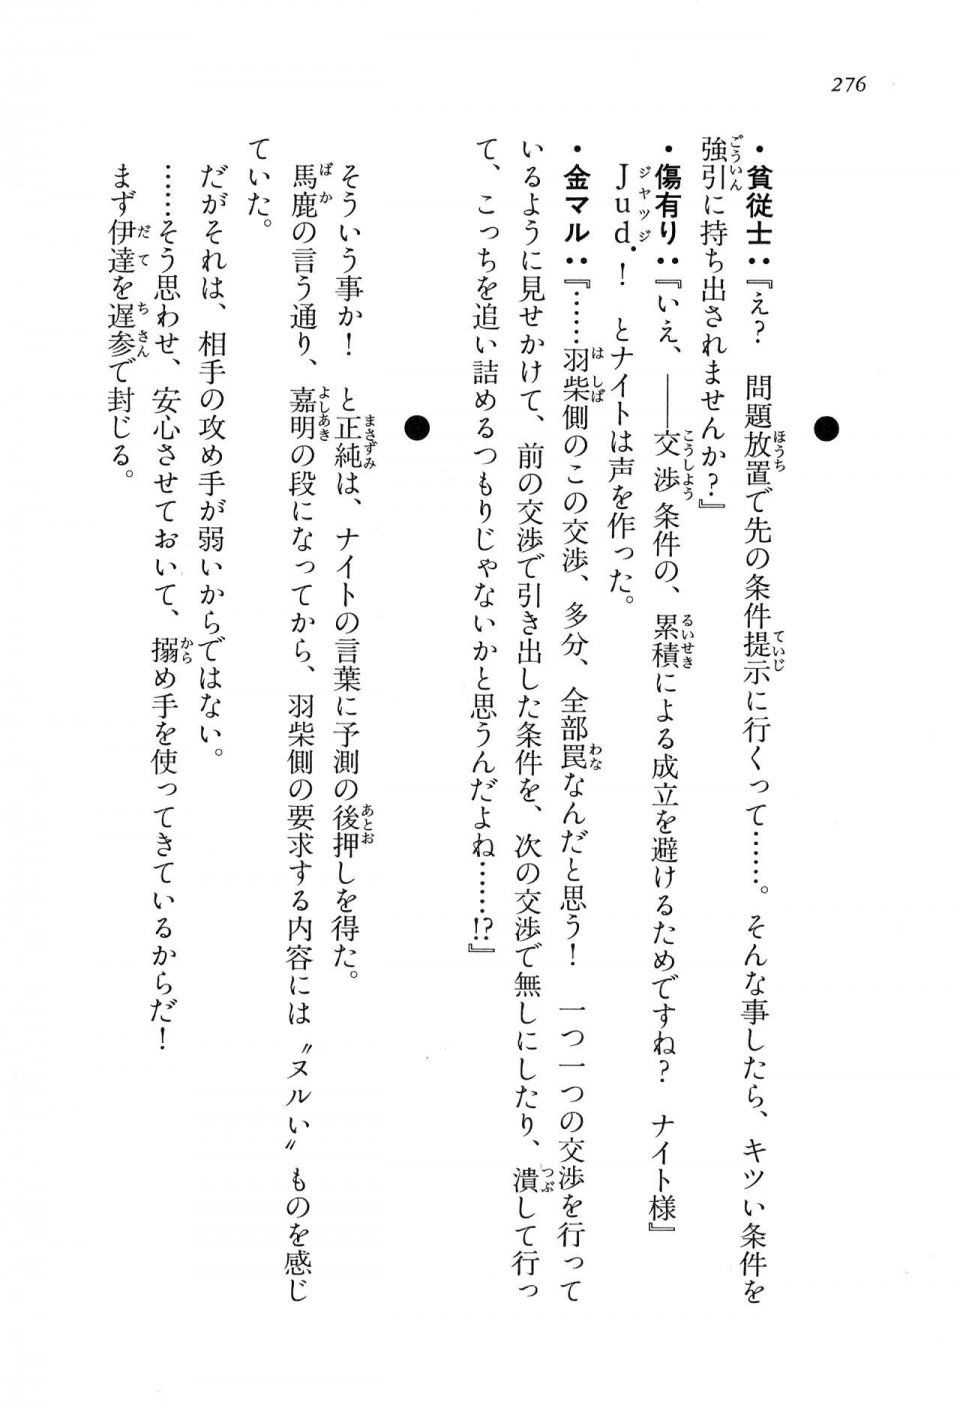 Kyoukai Senjou no Horizon LN Vol 16(7A) - Photo #276